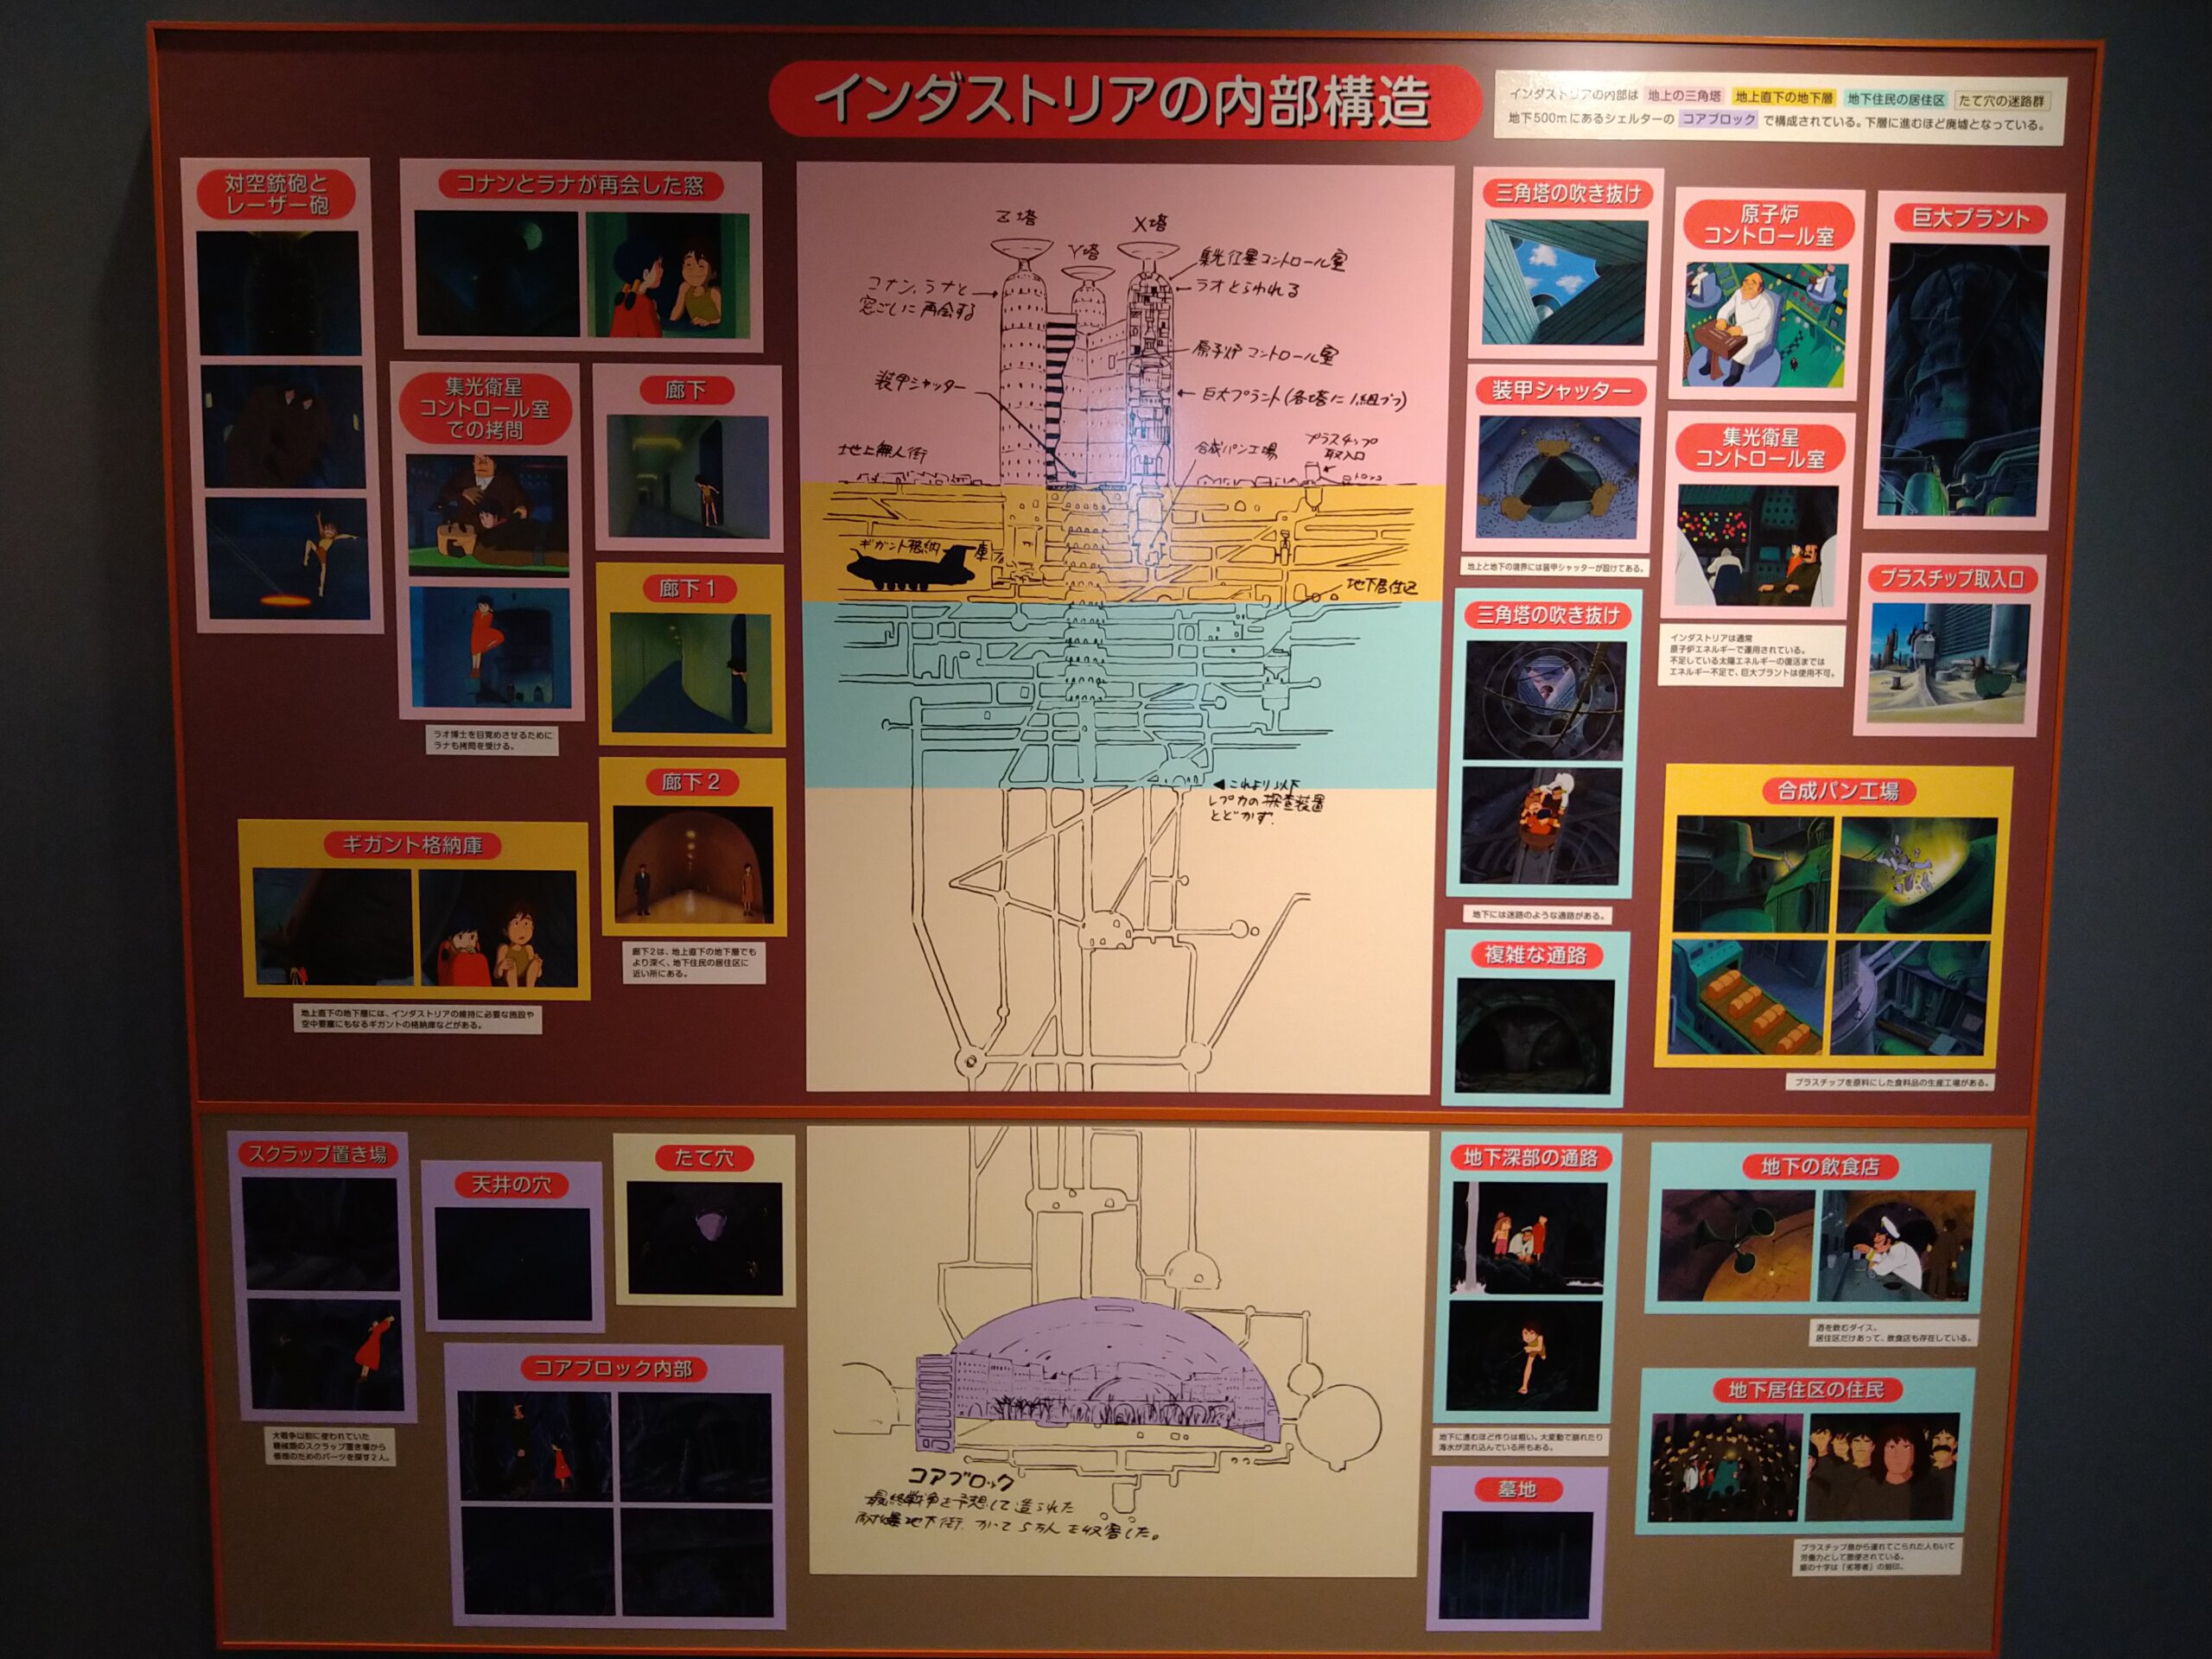 インダストリアを解説した展示パネル　(c)NIPPON ANIMATION CO.,LTD. (c)Museo d'Arte Ghibli (c)Studio Ghibli